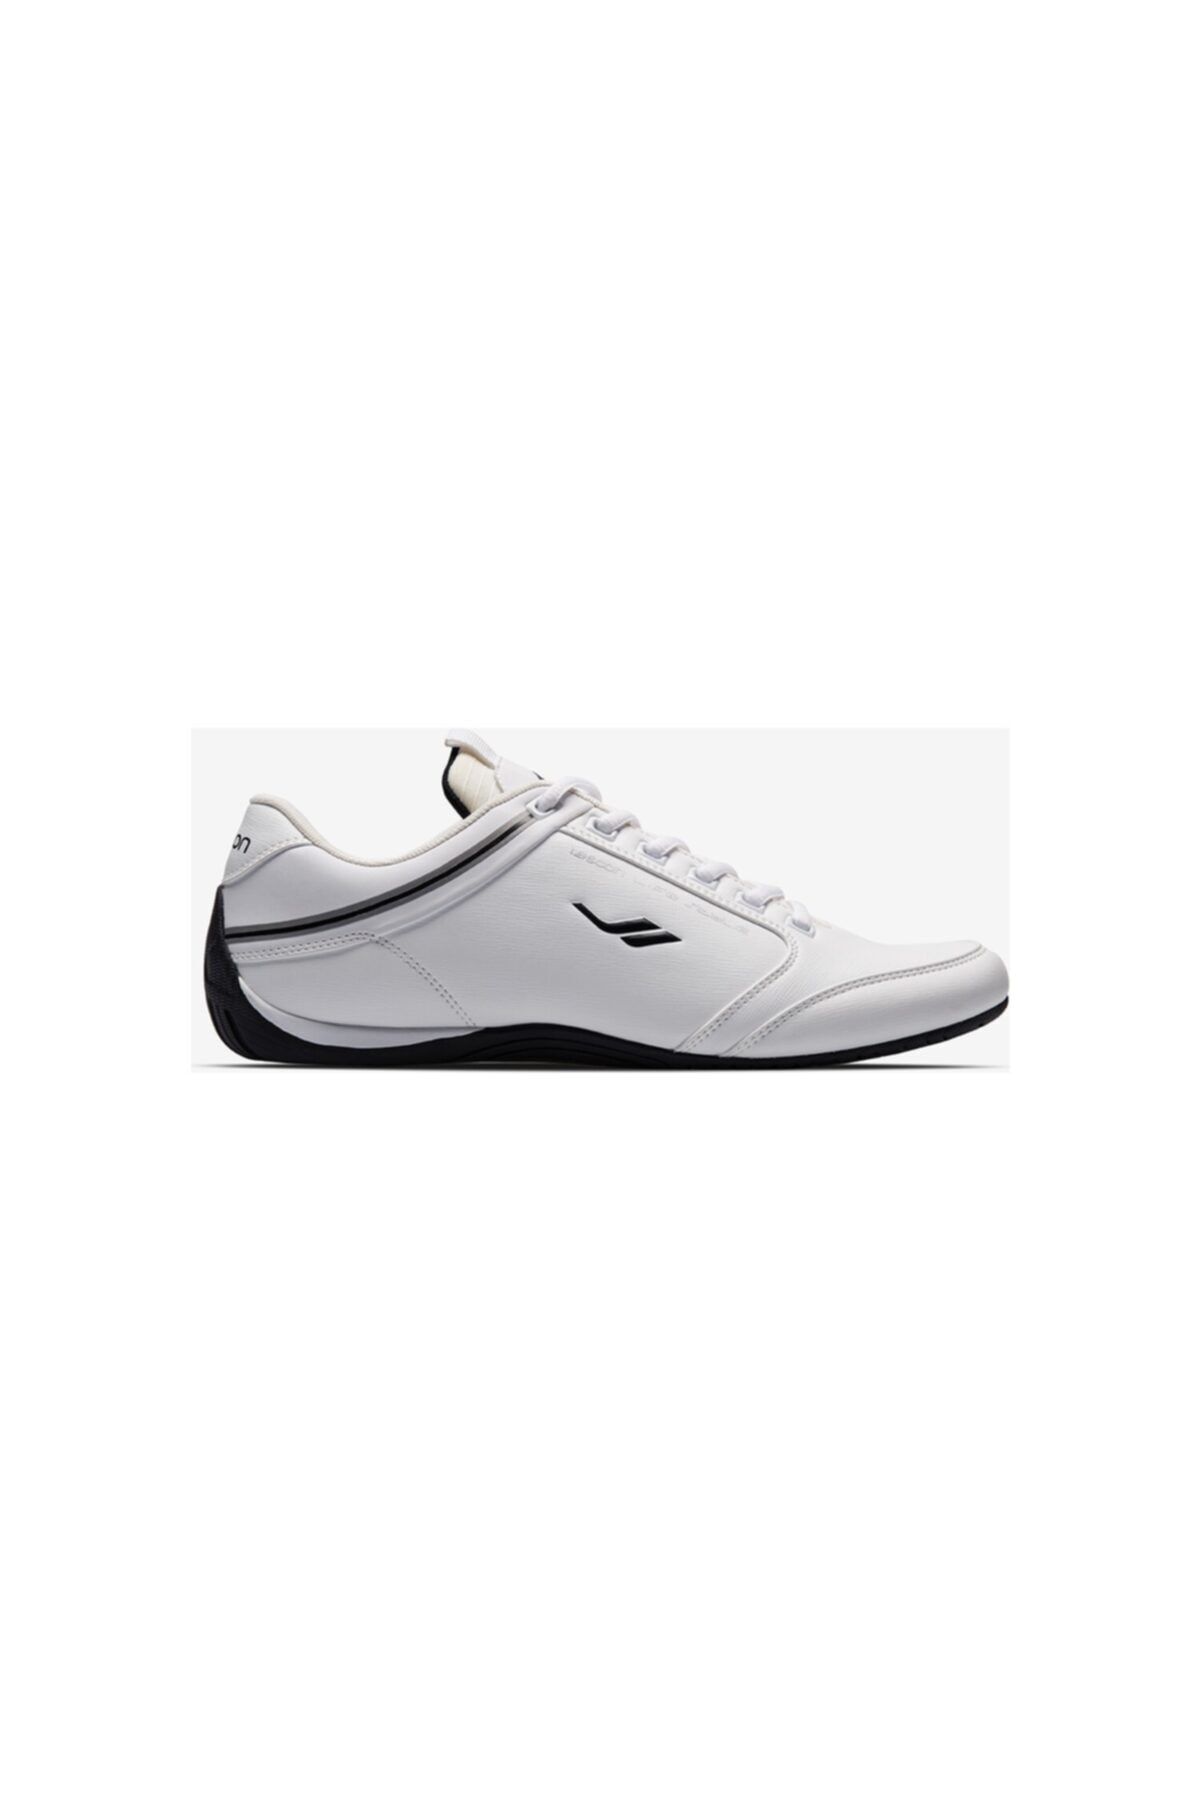 Lescon Ghost 2 Beyaz Erkek Sneaker Ayakkabı